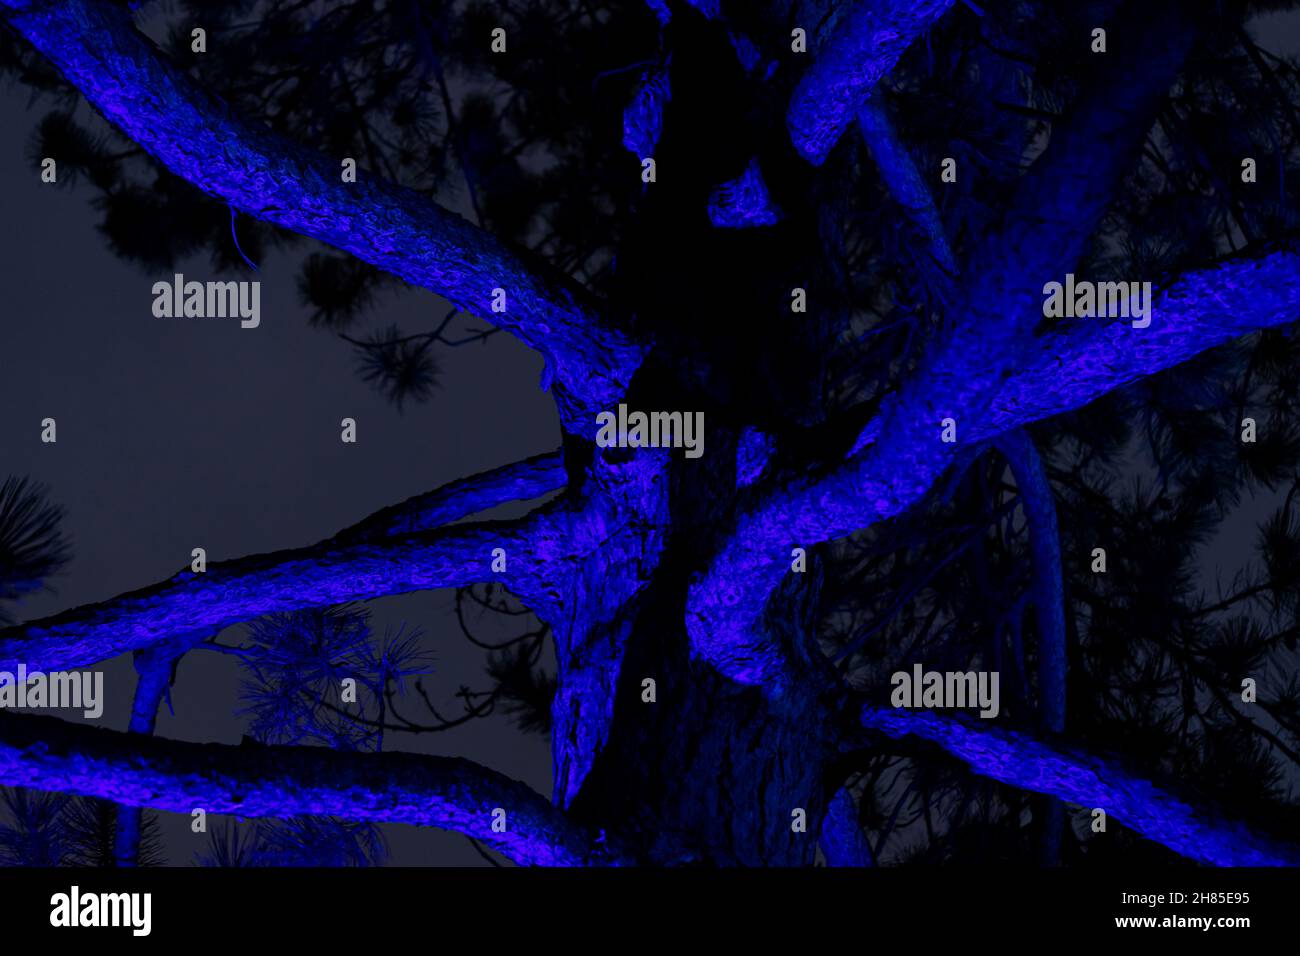 el tronco grande del árbol y las ramas por la noche iluminadas por una luz de color azul crea una imagen misteriosa, espeluznante y espeluznante Foto de stock